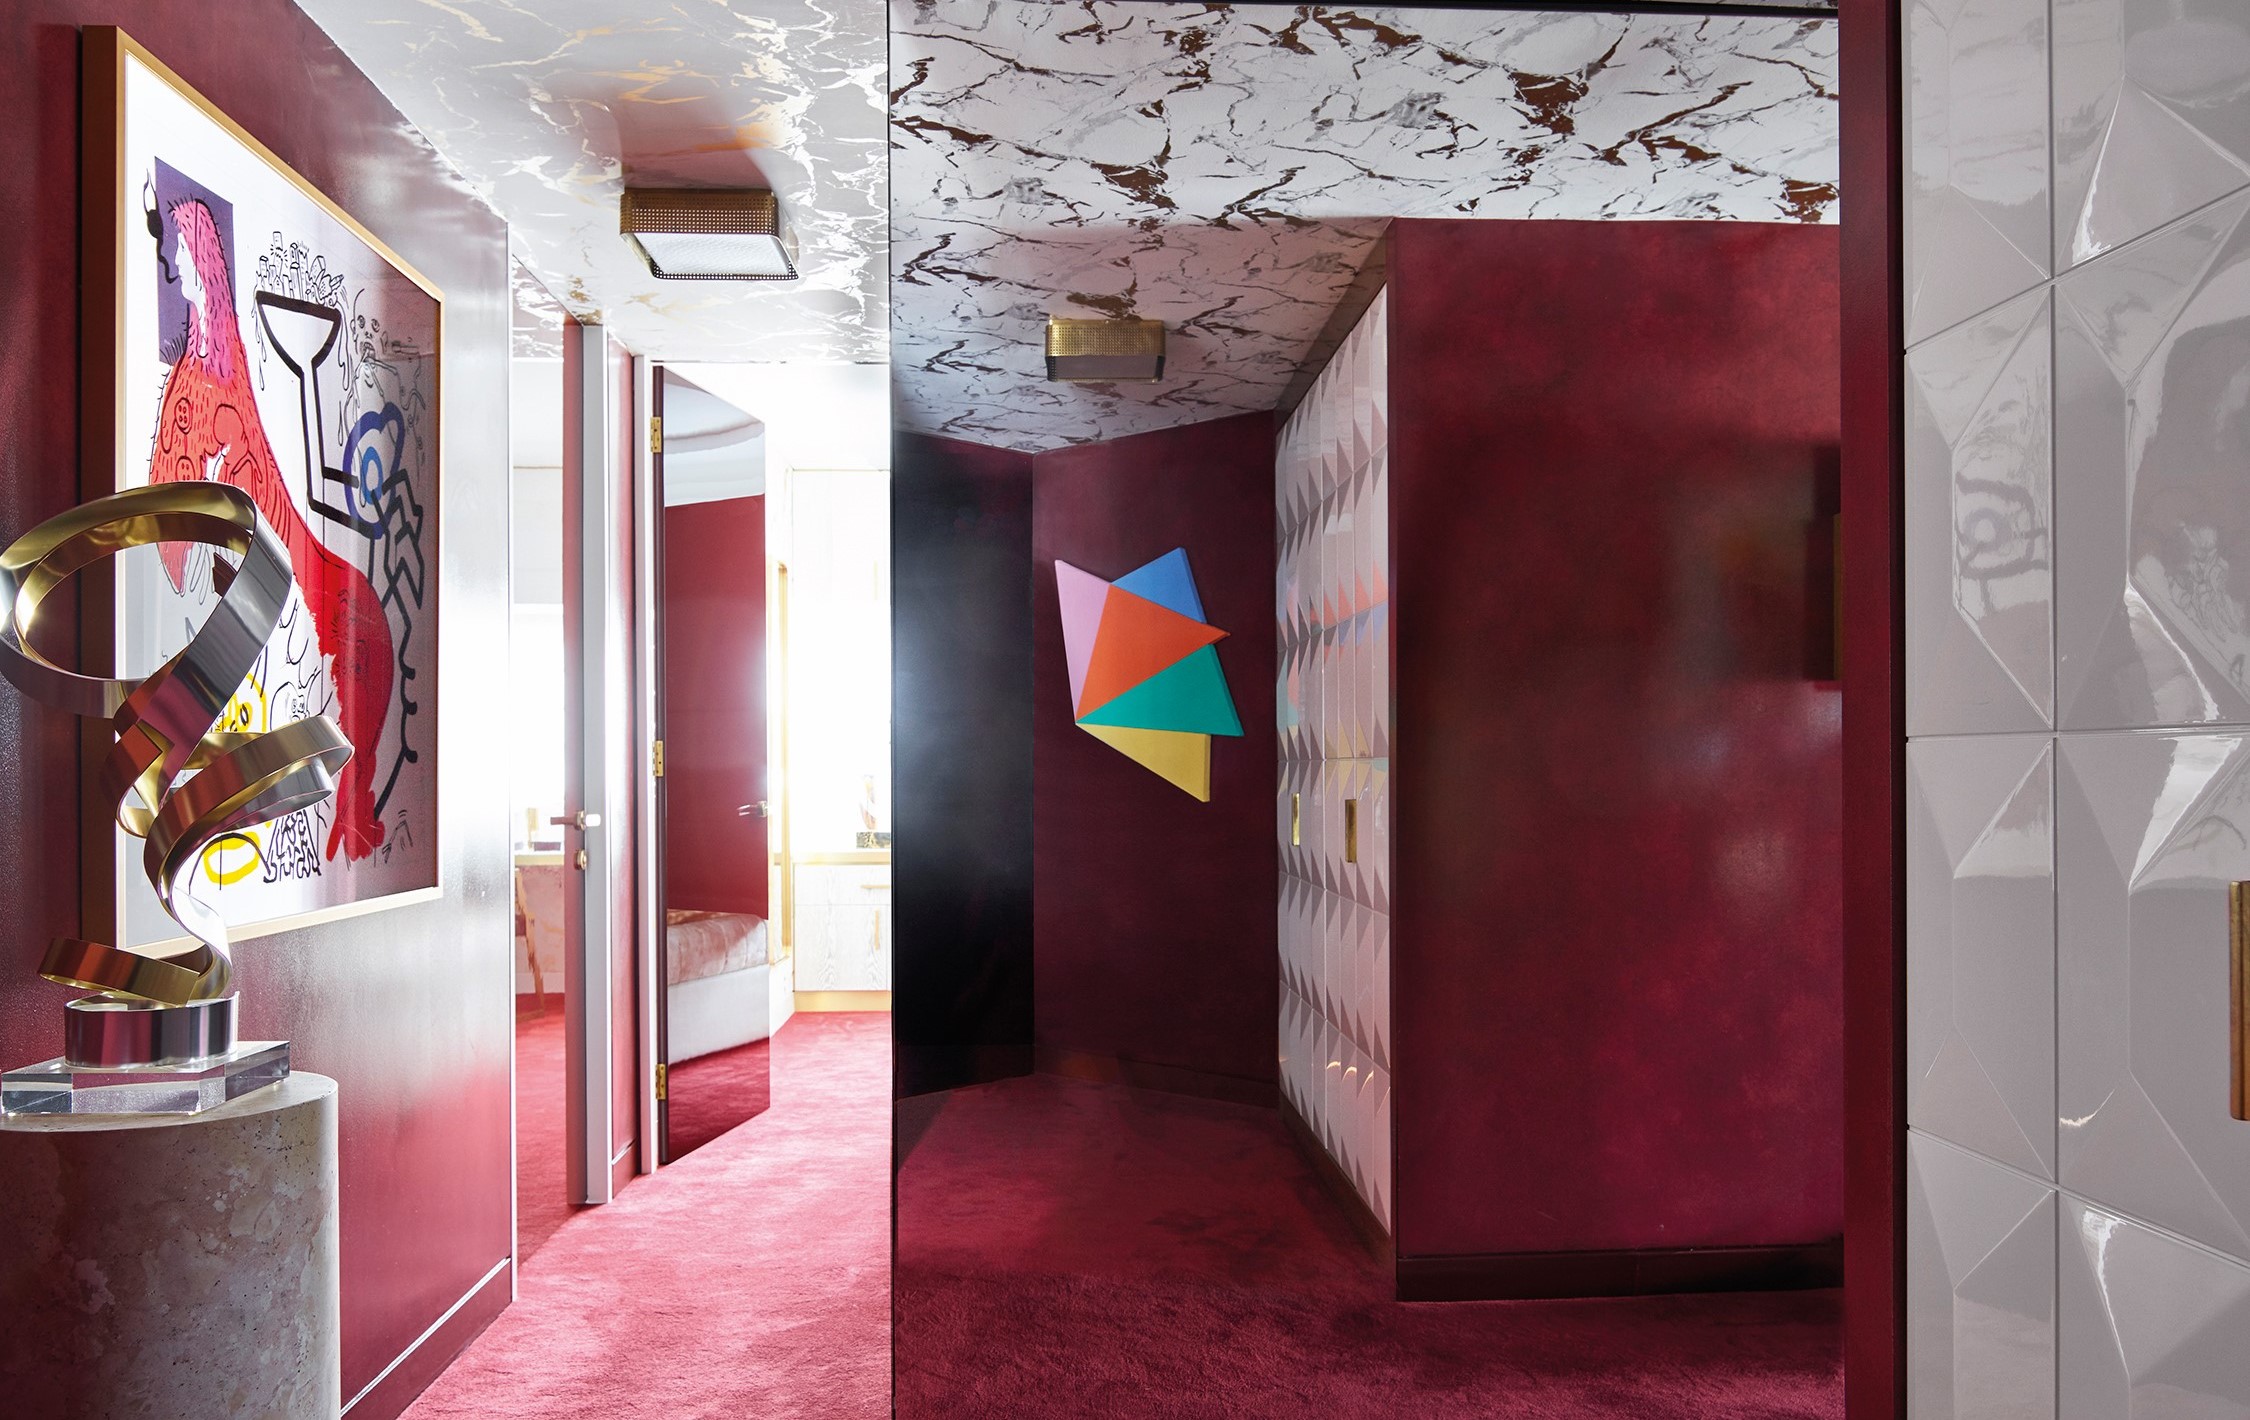 Greg Natale 的大膽用色，為空間營造出低調奢華的風采。